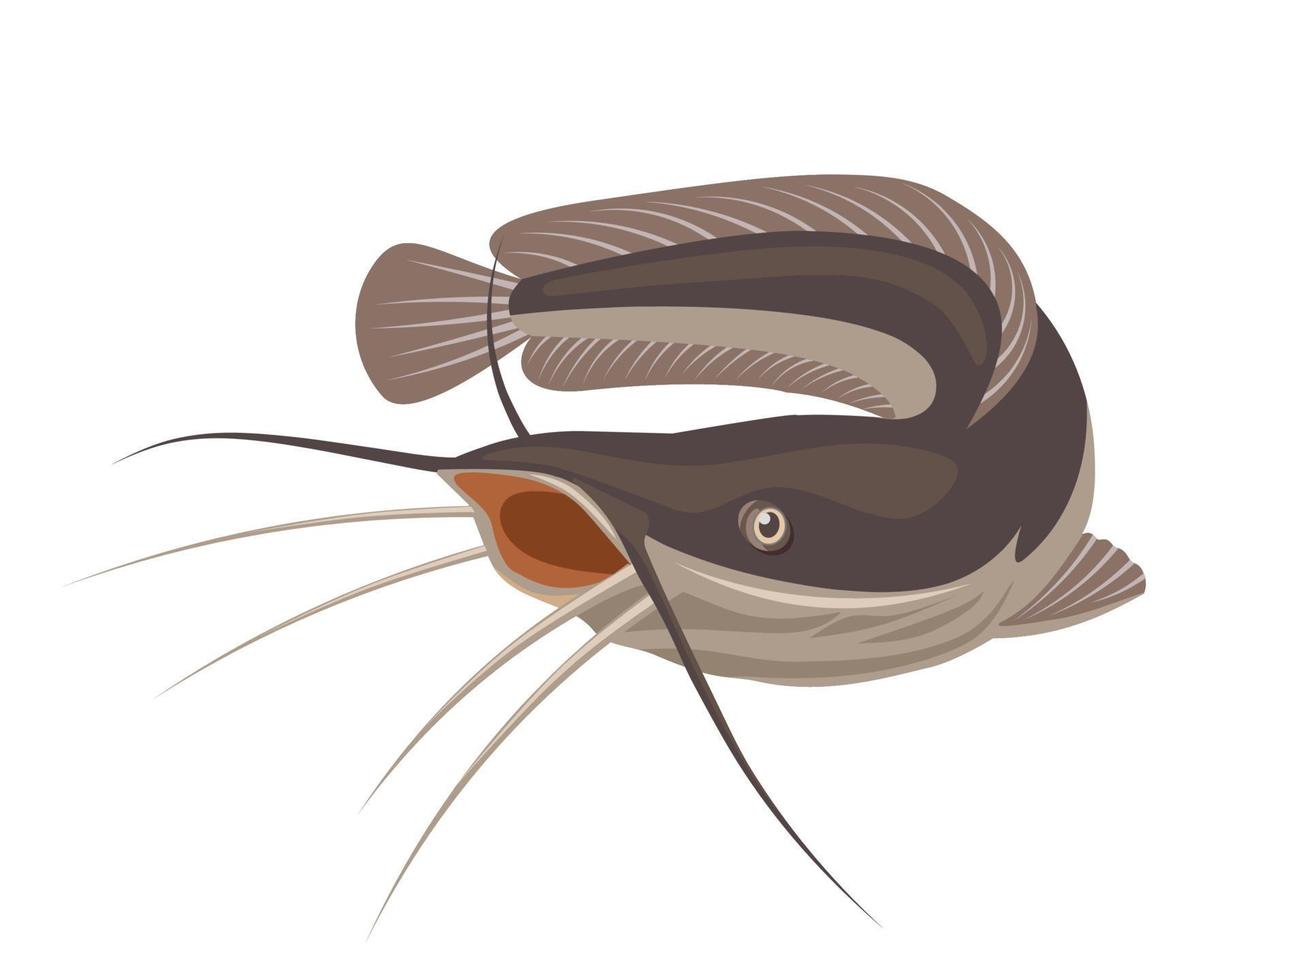 illustrazione vettoriale di pesce gatto, isolato su sfondo bianco, adatto come etichetta per prodotti ittici trasformati o hobby di pesca.